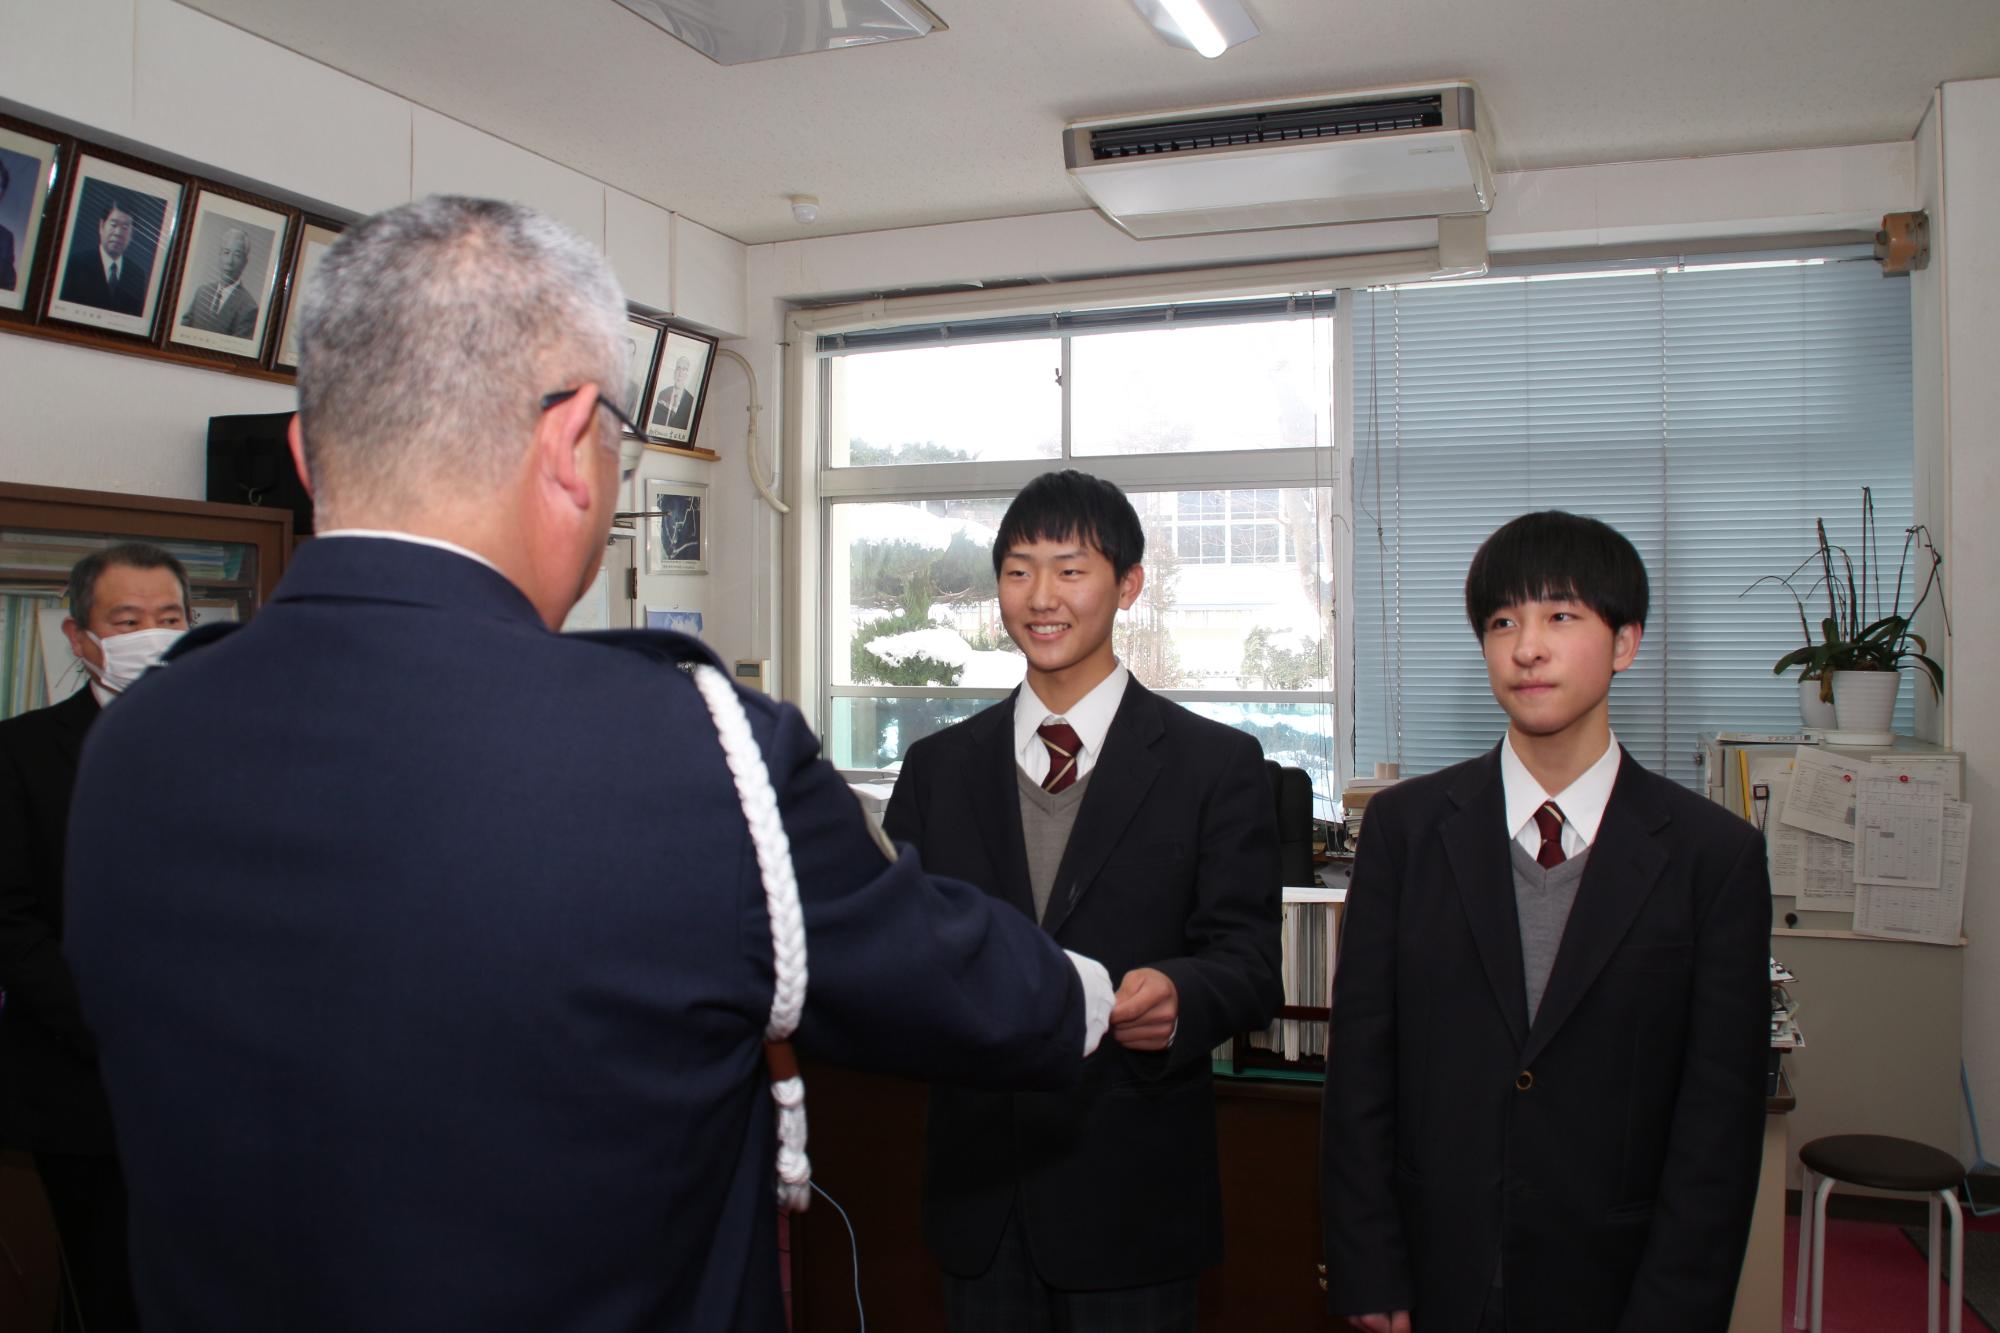 千種高校の生徒代表の赤染さんが、西藤県警交通企画課調査官から表彰状を授与されている写真